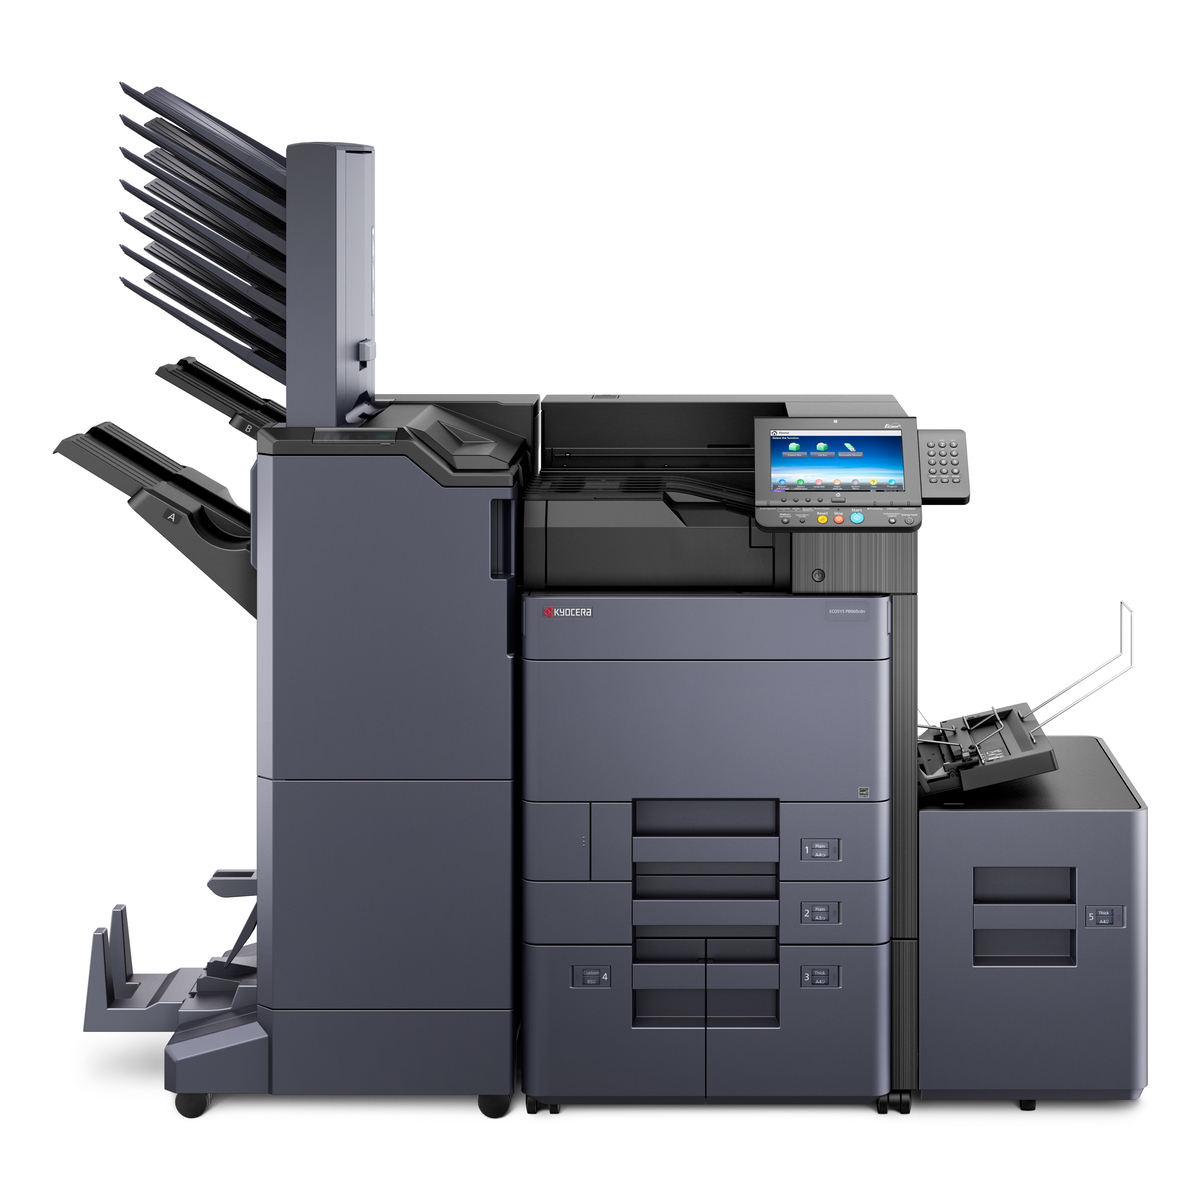 Kyocera ECOSYS P8060cdn Printer